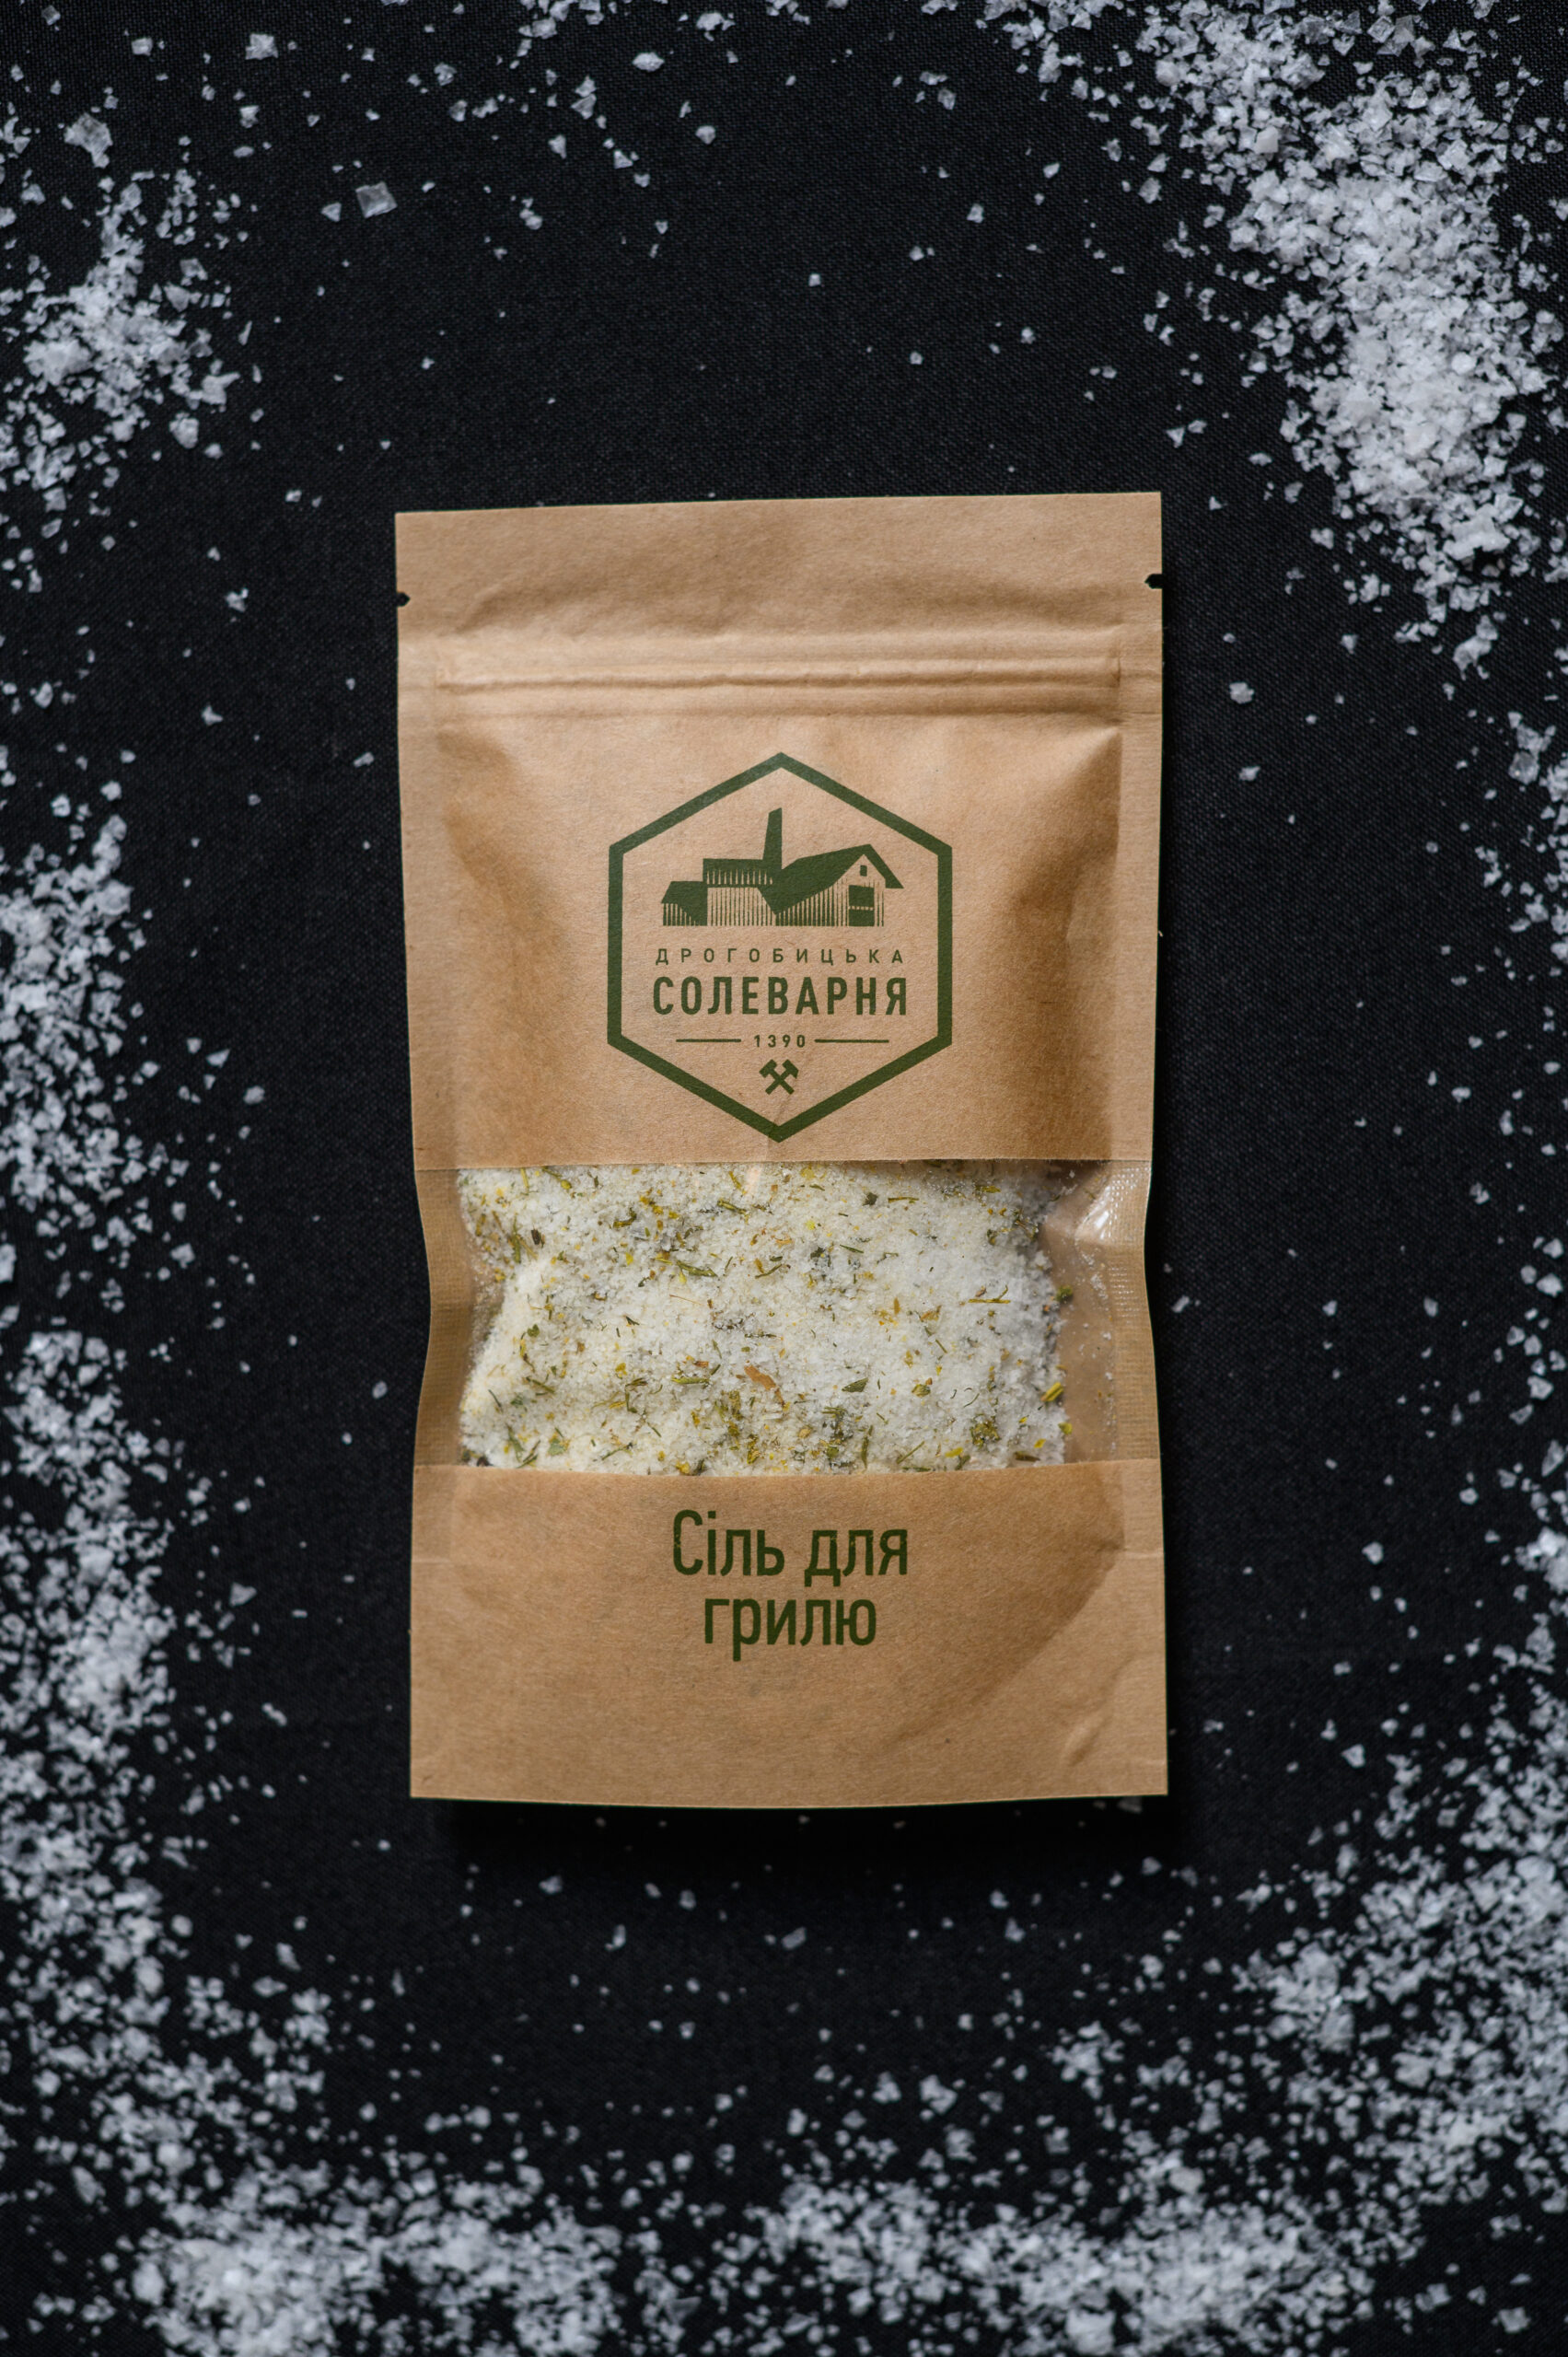 Дрогобицька сіль купити - Дрогобицька солеварня